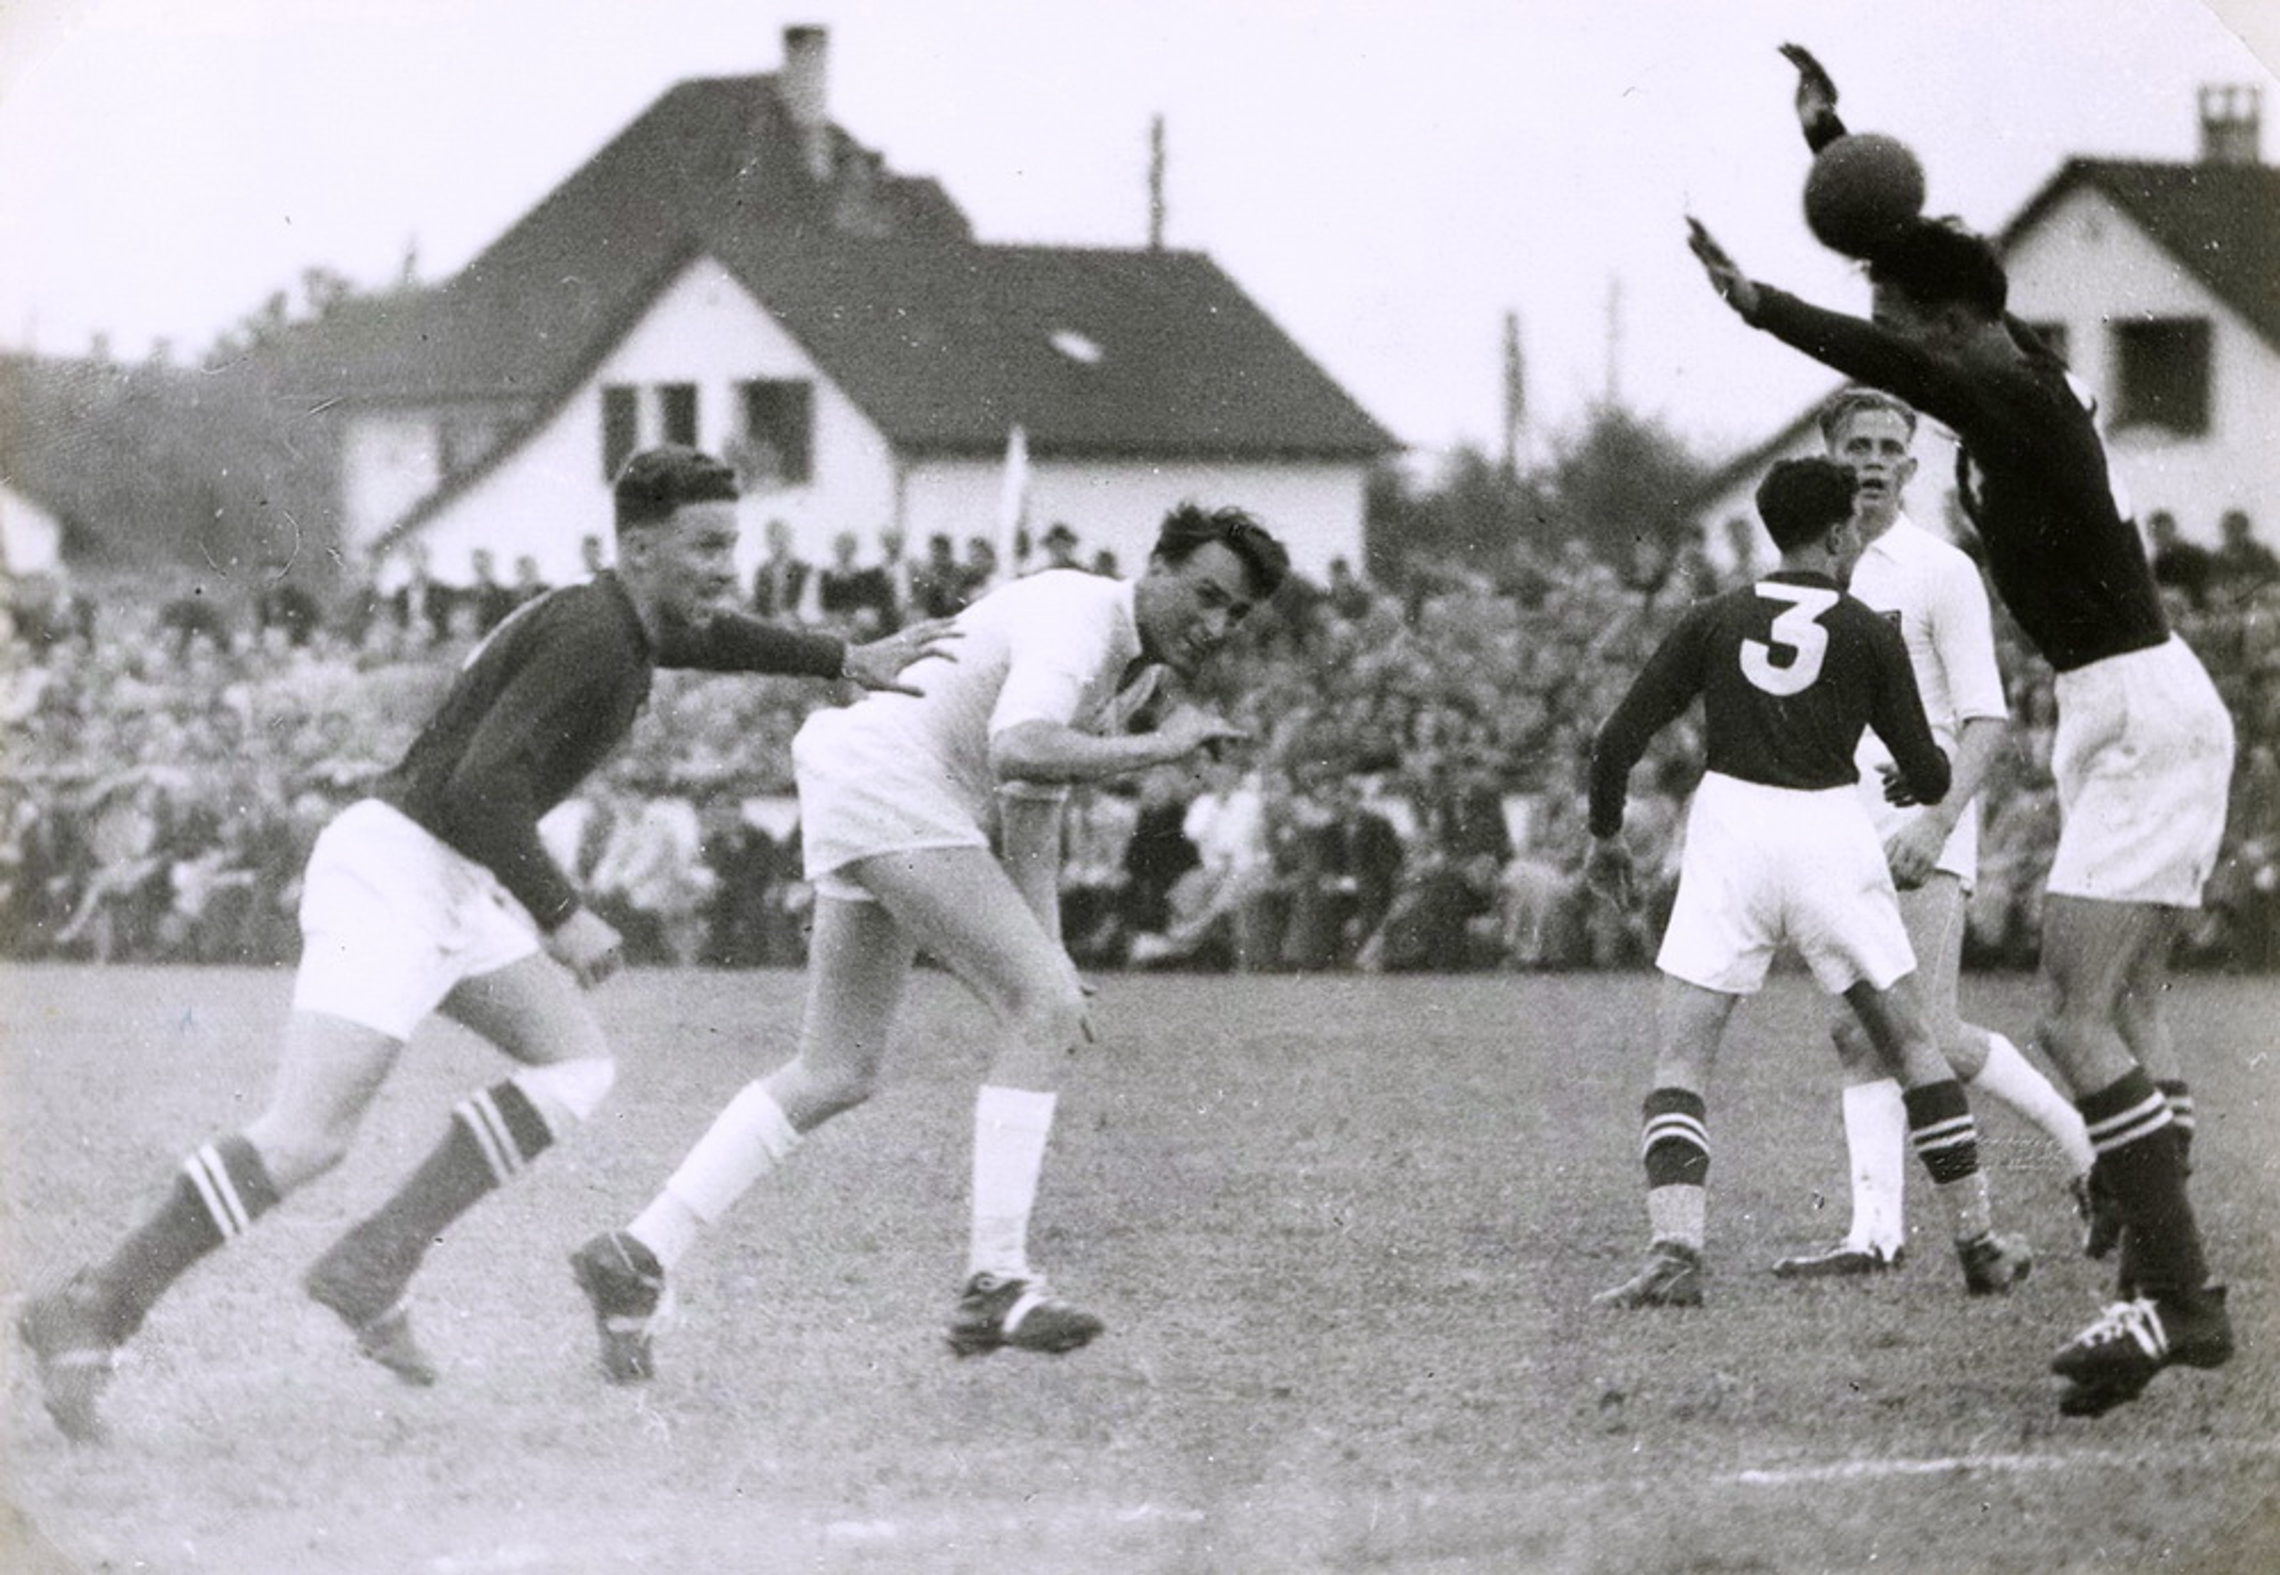 23.9.1951 Schweiz - Deutschland 12:20 (7:11) Aarau Brügglifeld, 6000 Zuschauer, Schiedsrichter Steiner (AUT)